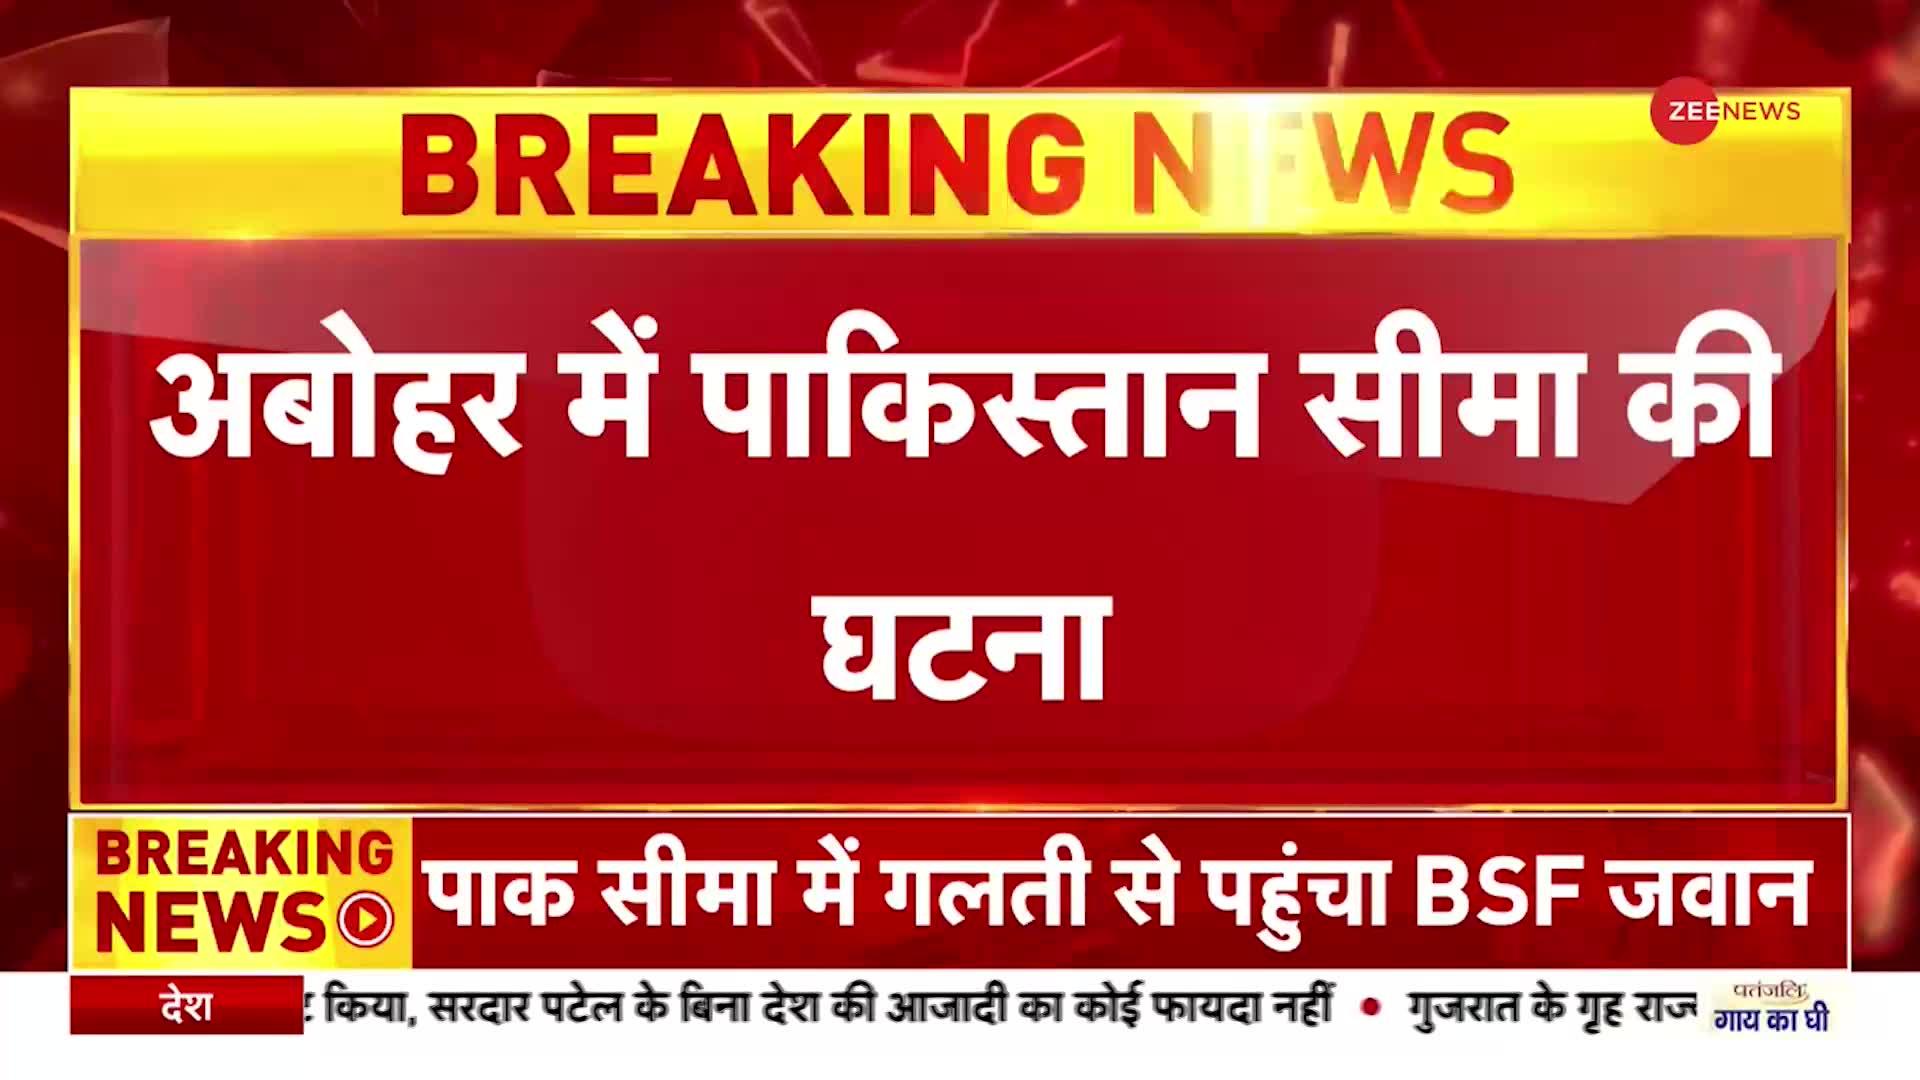 Breaking News: अबोहर में पाकिस्तान सीमा में पहुंचा BSF जवान, Pakistan ने उठाया यह कदम